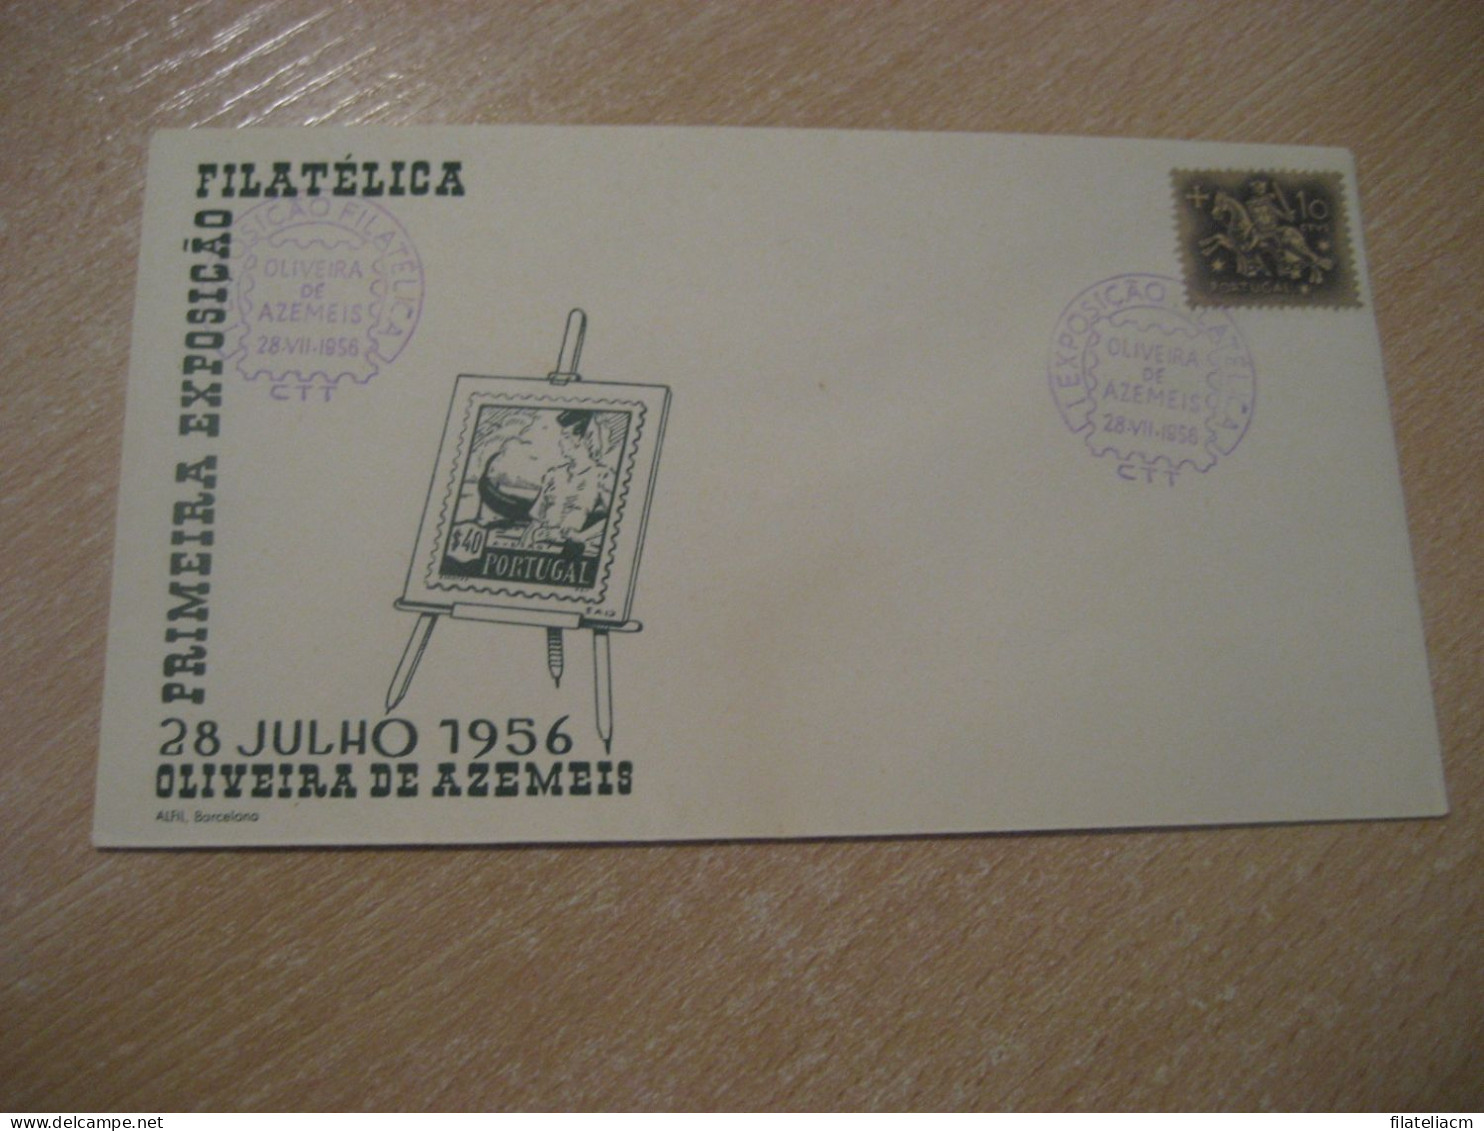 OLIVEIRA DE AZEMEIS 1956 Expo Filatelica Cancel Cover PORTUGAL - Storia Postale